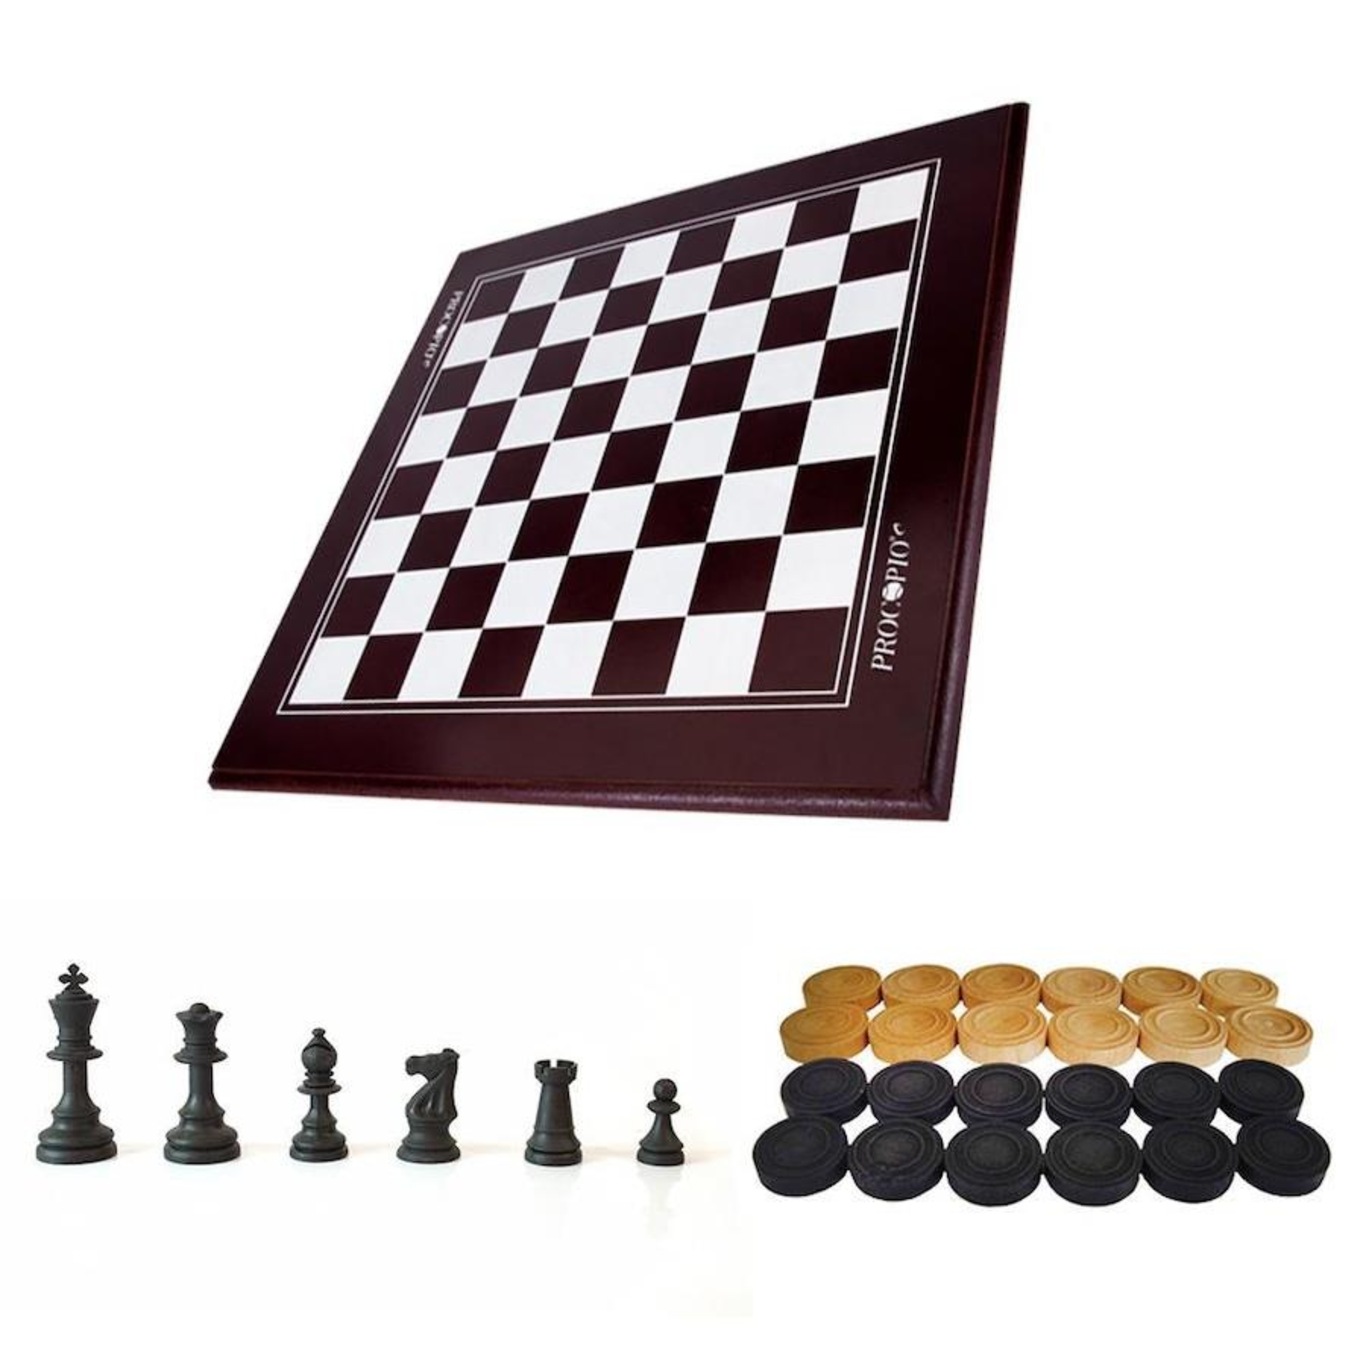 Tabuleiro de Dama e Xadrez com 24 peças Dama e 32 peças xadrez